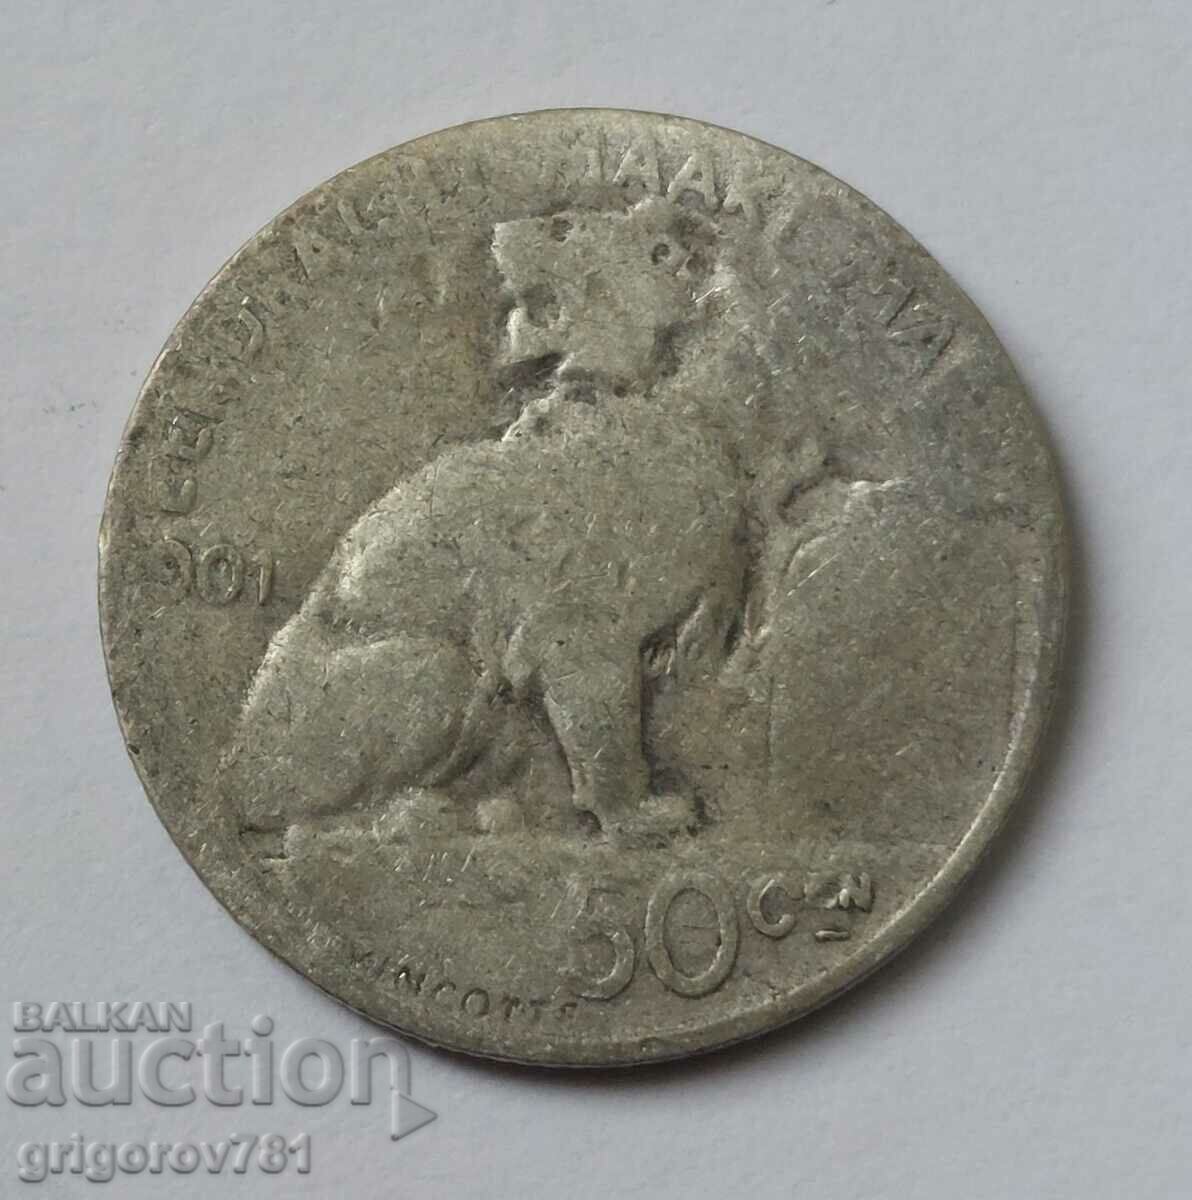 50 centimes silver Belgium 1901 - silver coin #76